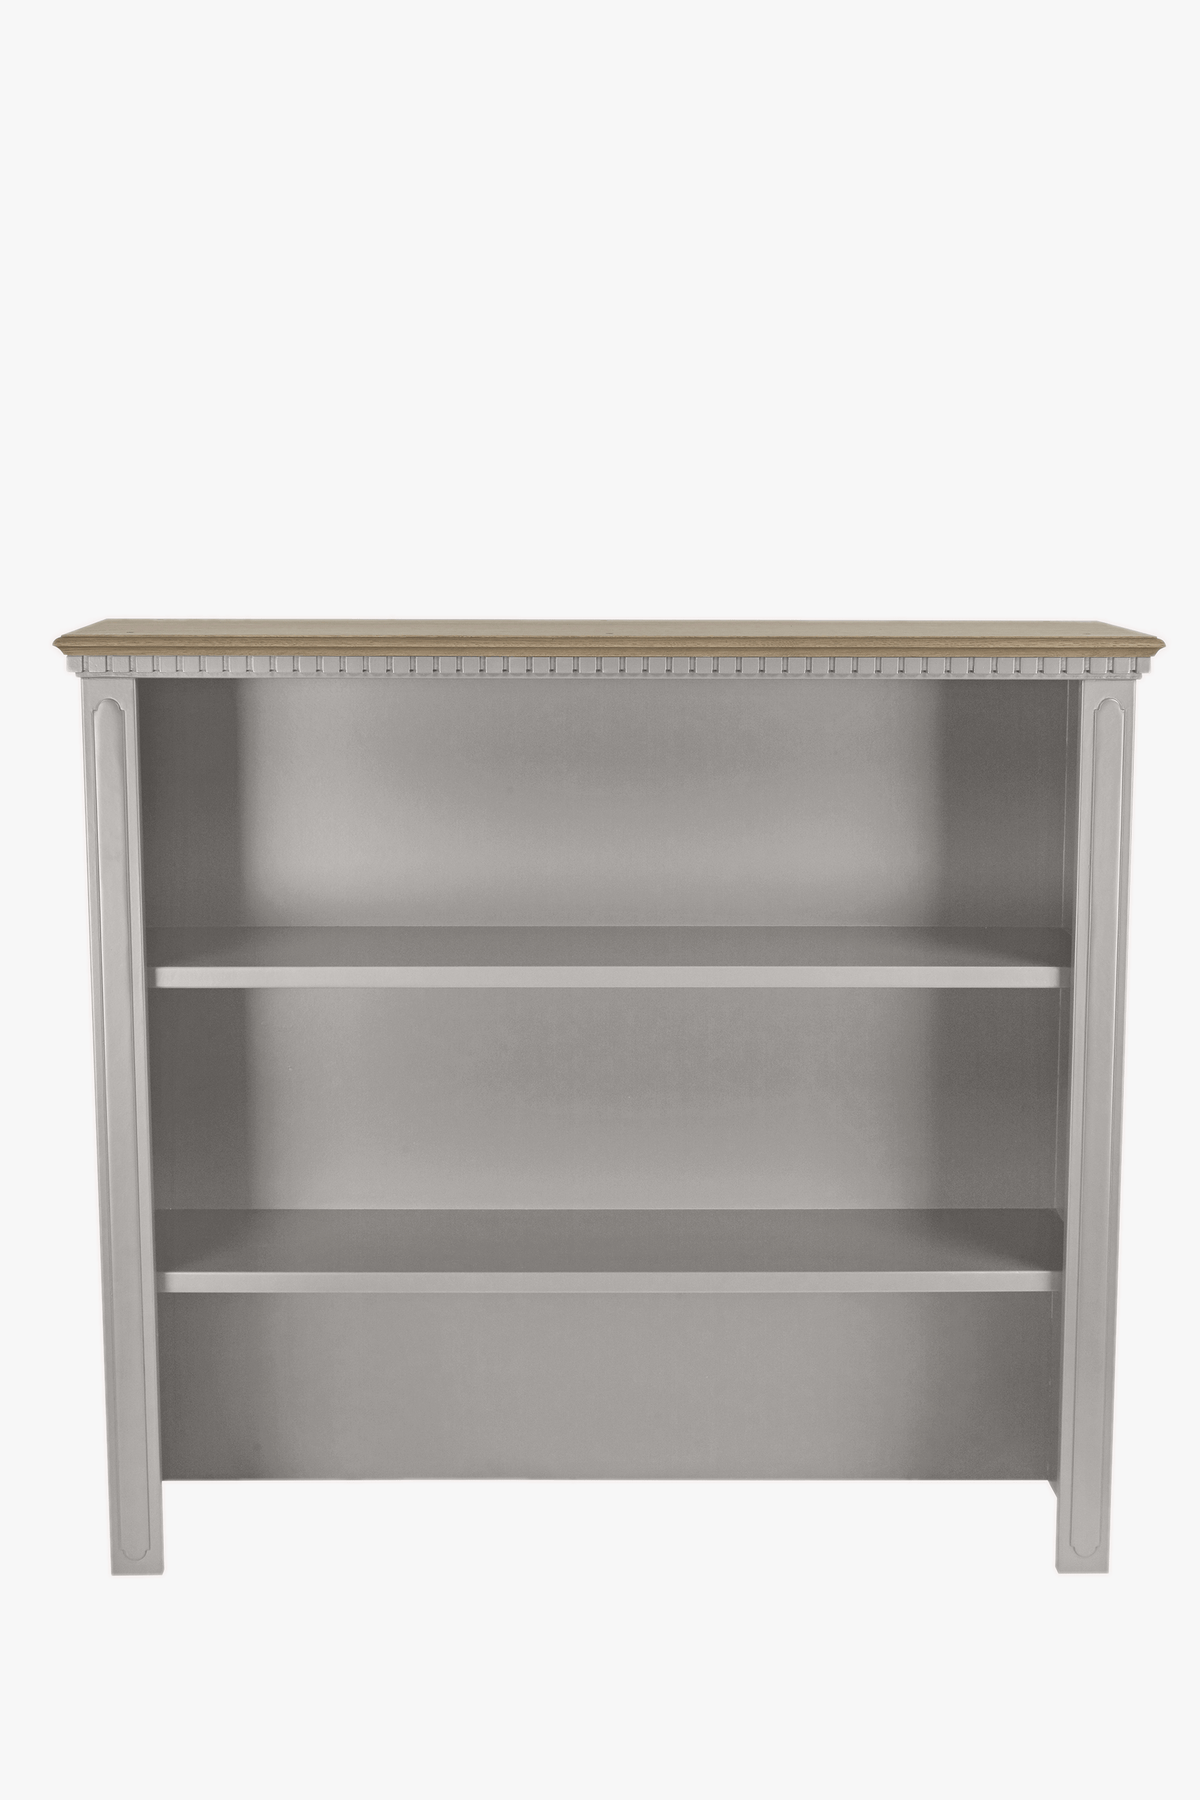 Hanover Dresser Top for 2 Door Sideboard